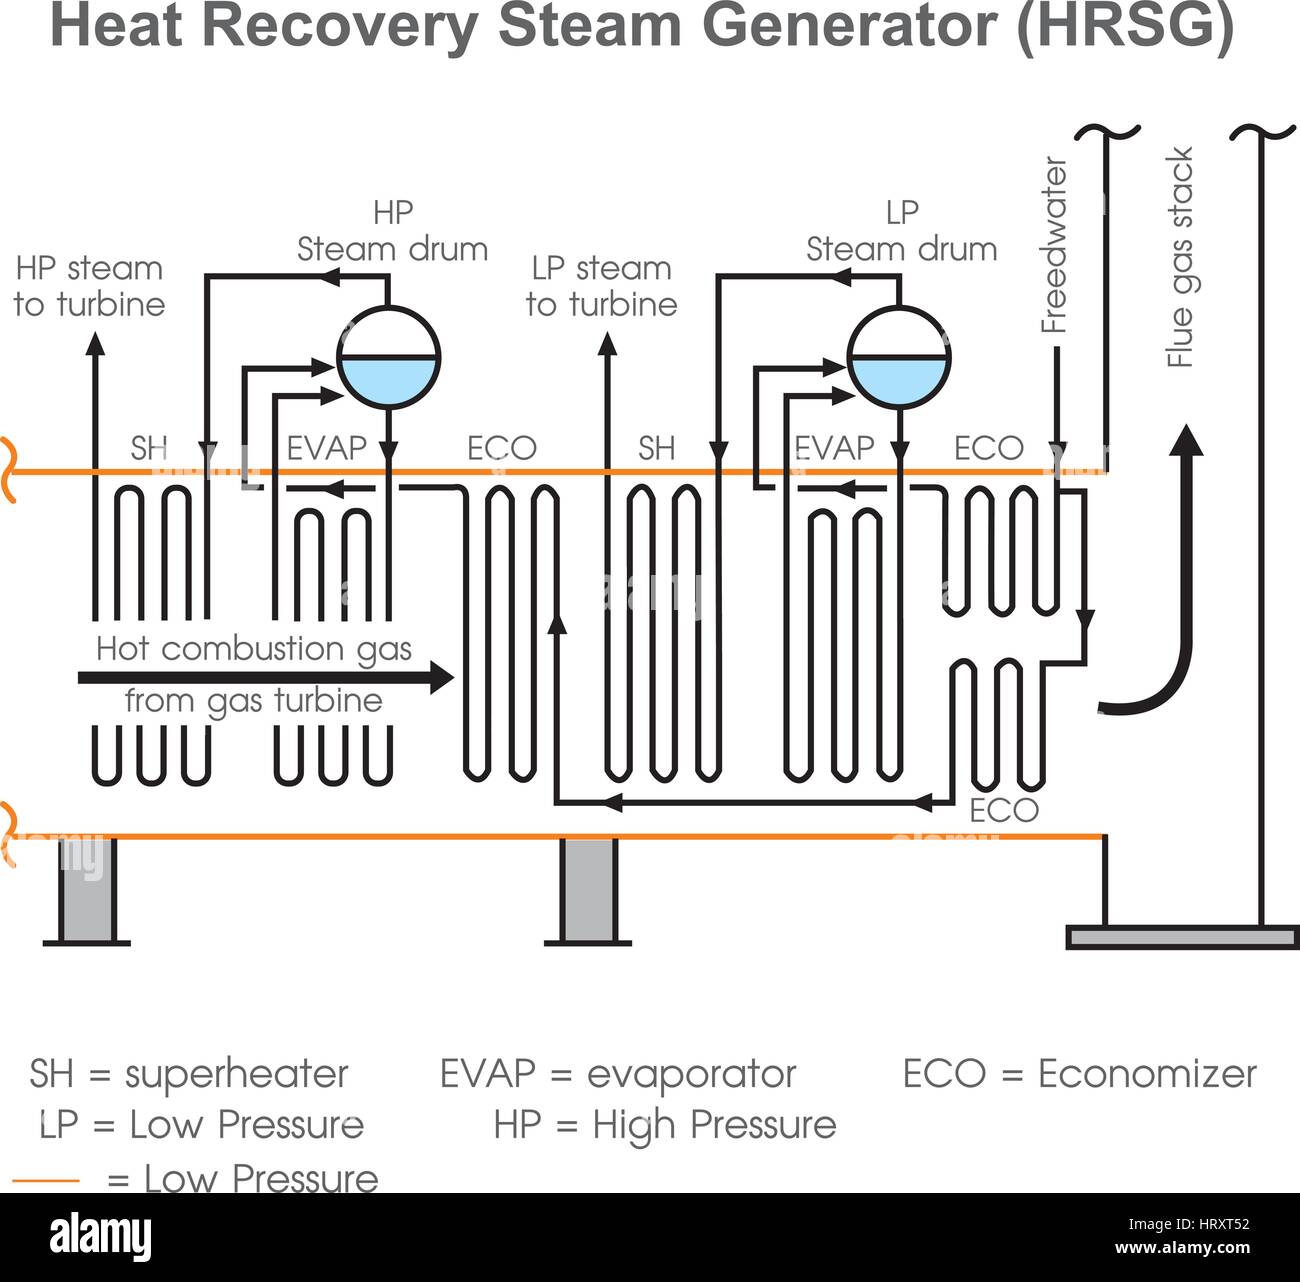 Un generador de vapor por recuperación de calor (HRSG) es un intercambiador  de calor de recuperación de energía que recupera el calor de una corriente  de gas caliente. Produce vapor que puede